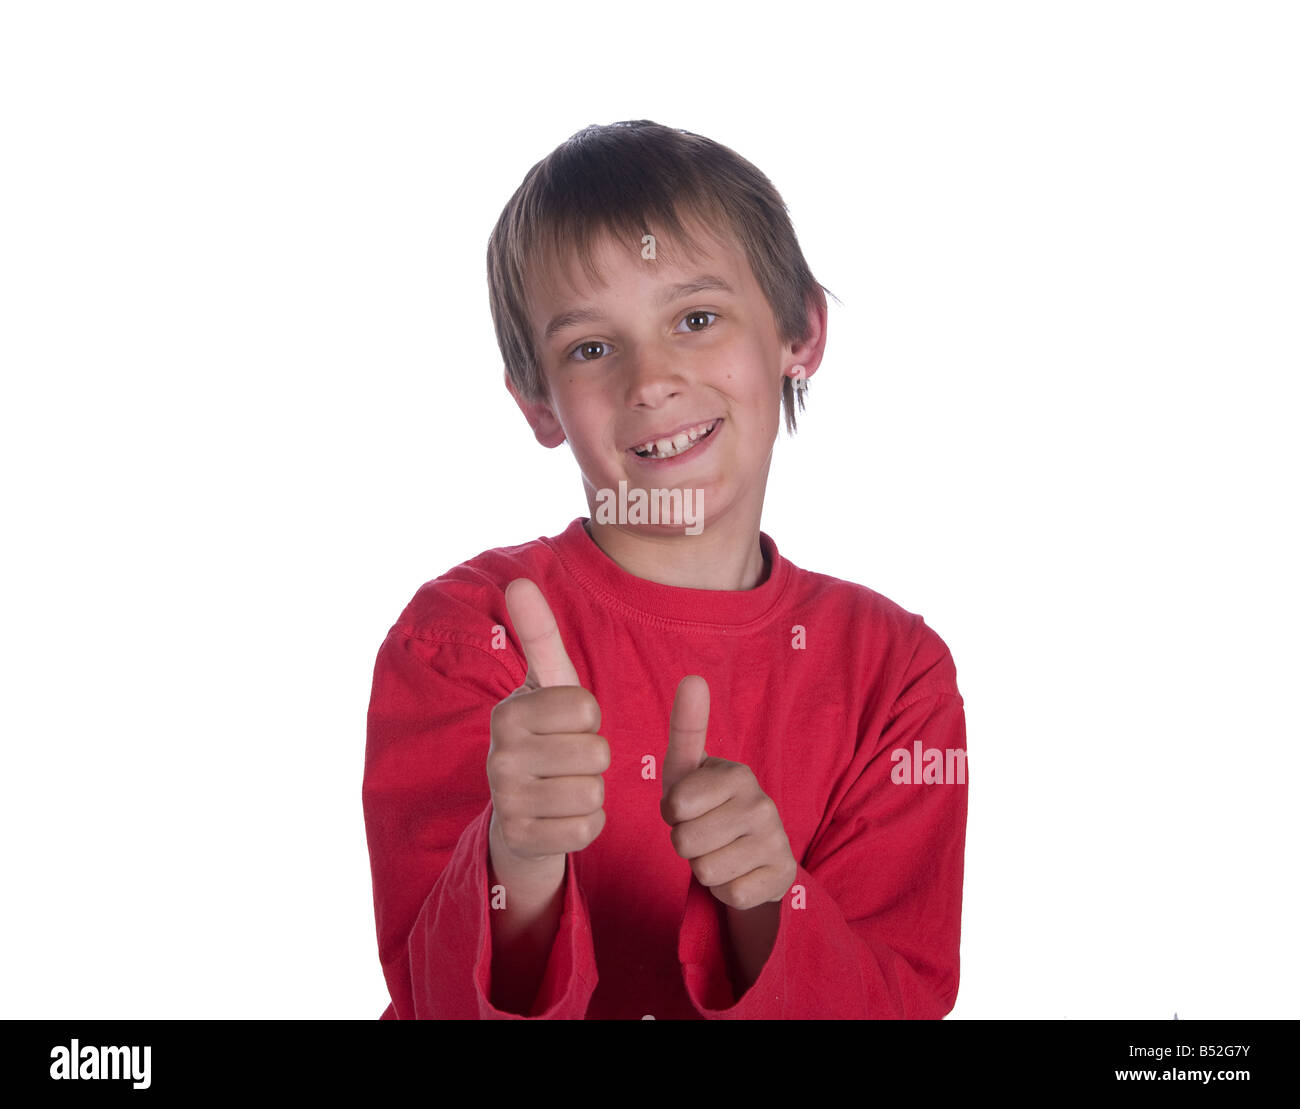 Immagine di un ragazzo con il pollice in alto su sfondo bianco Foto Stock